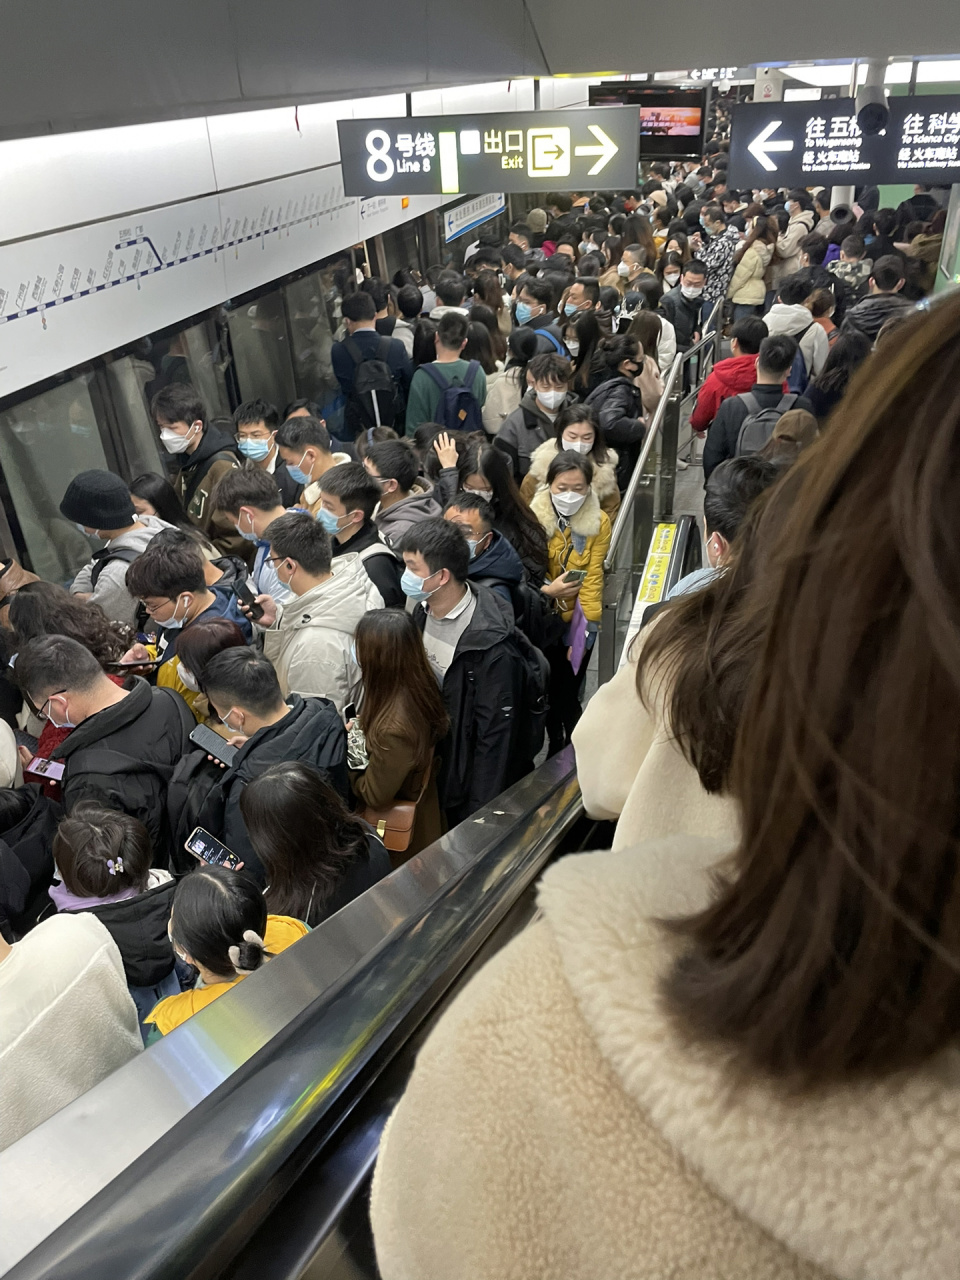 成都地铁 成都地铁早上九点的一号线,有点好奇,真的挤得上去吗